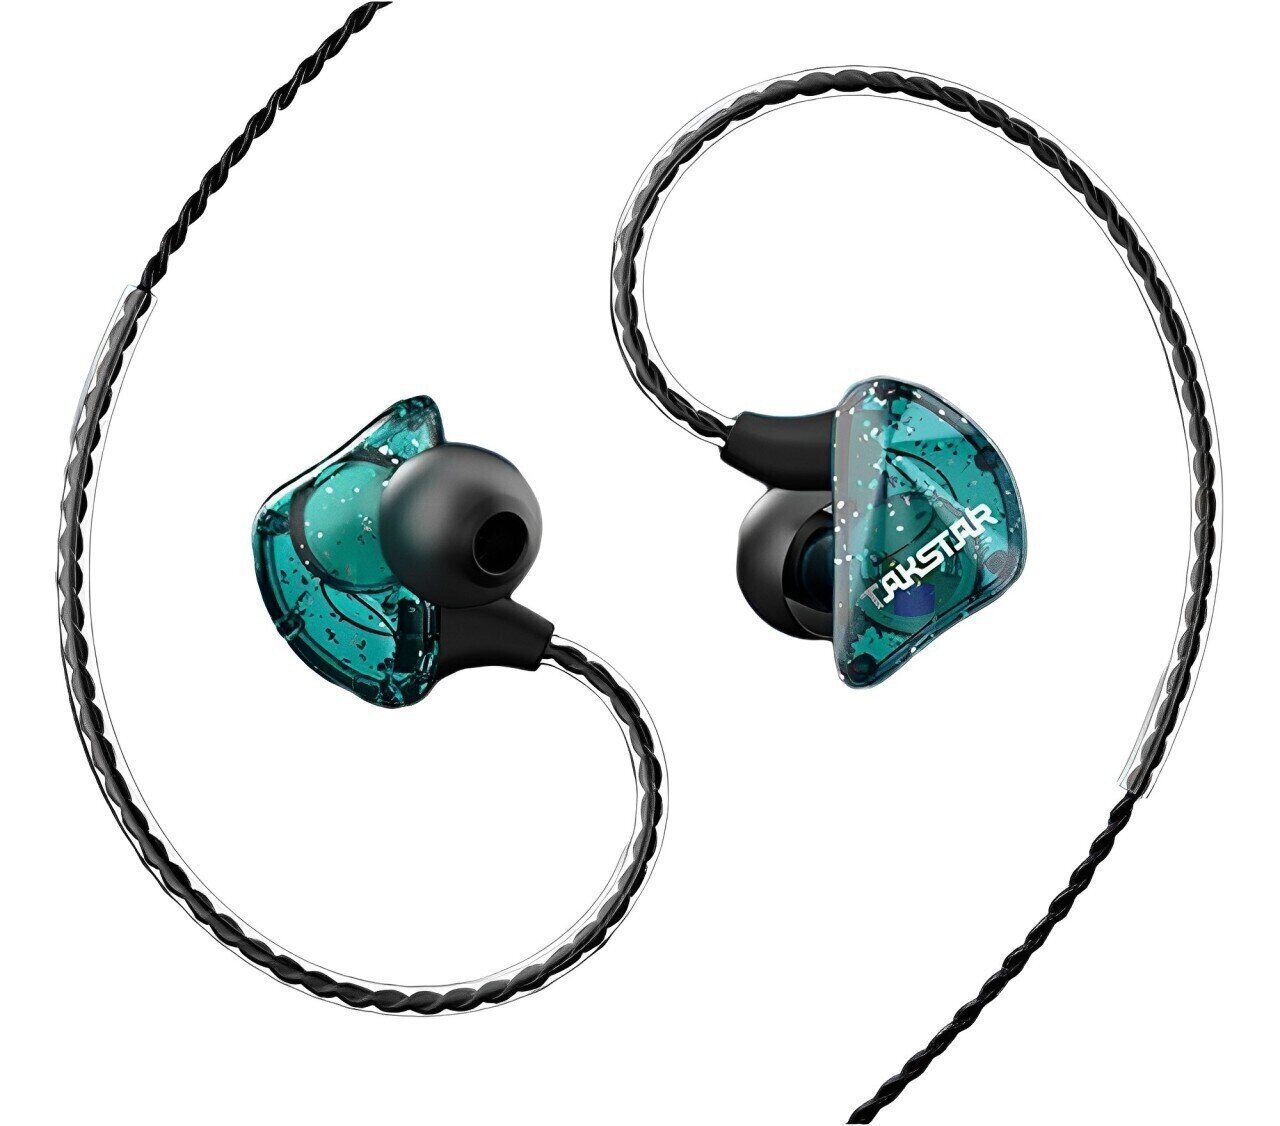 Ear Loop headphones Takstar TS-2300 Blue In-Ear Monitor Earphones